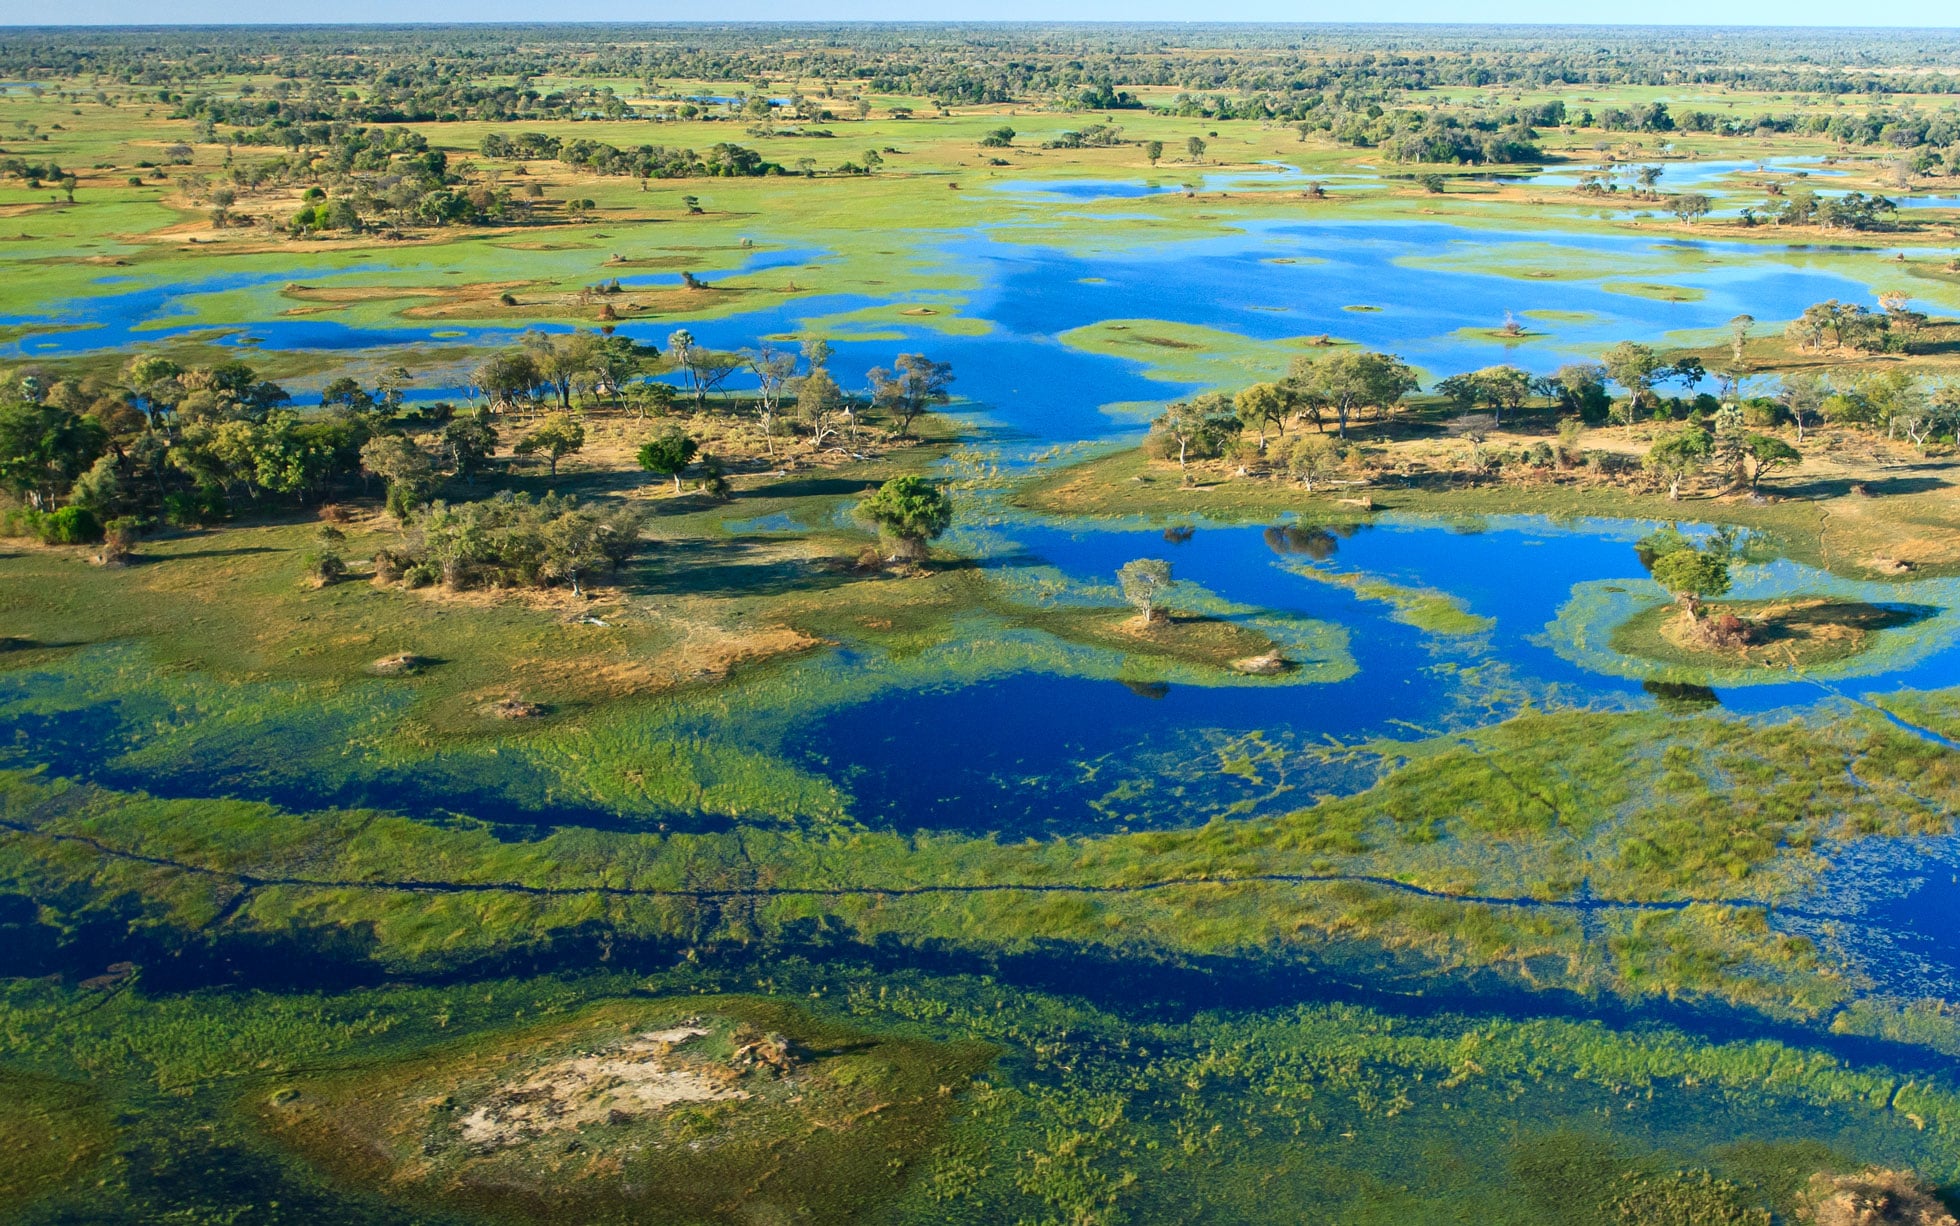 Kayaking on the Okavango